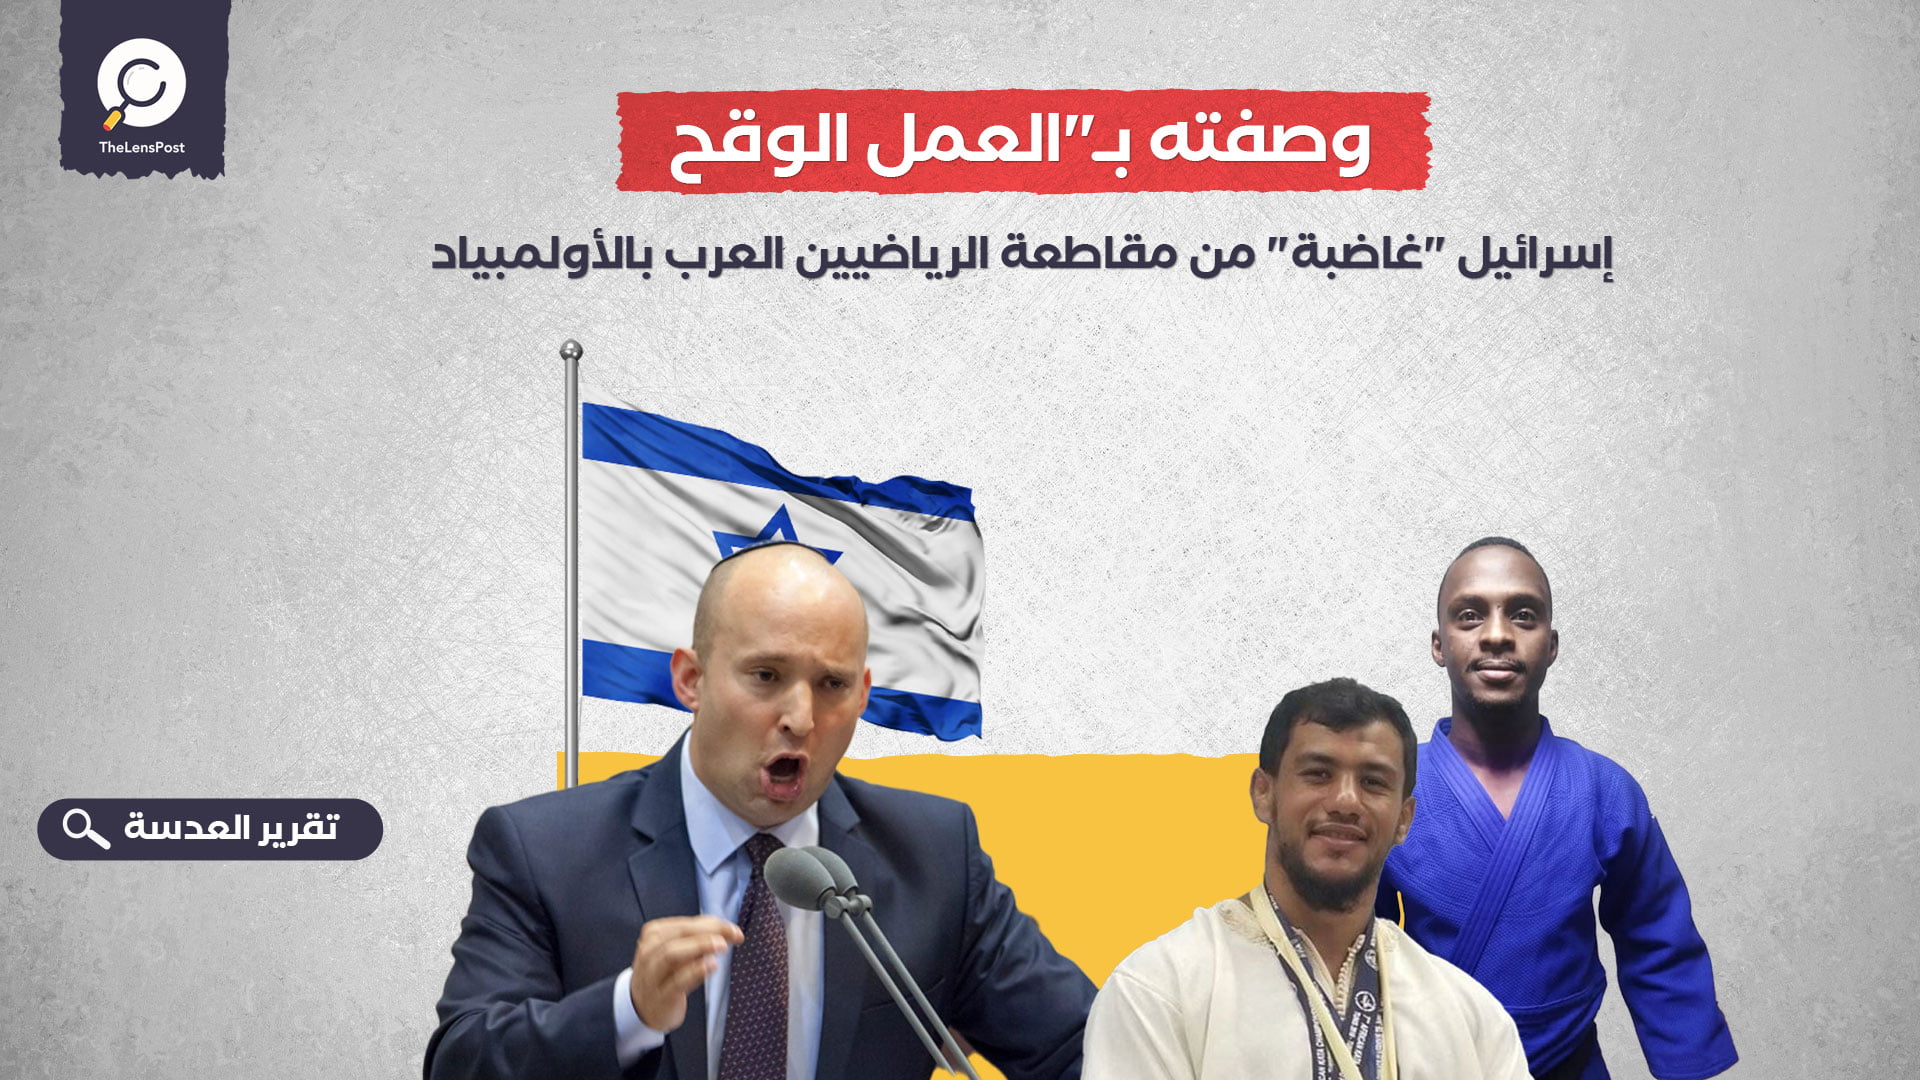 وصفته بـ"العمل الوقح".. إسرائيل "غاضبة" من مقاطعة الرياضيين العرب بالأولمبياد